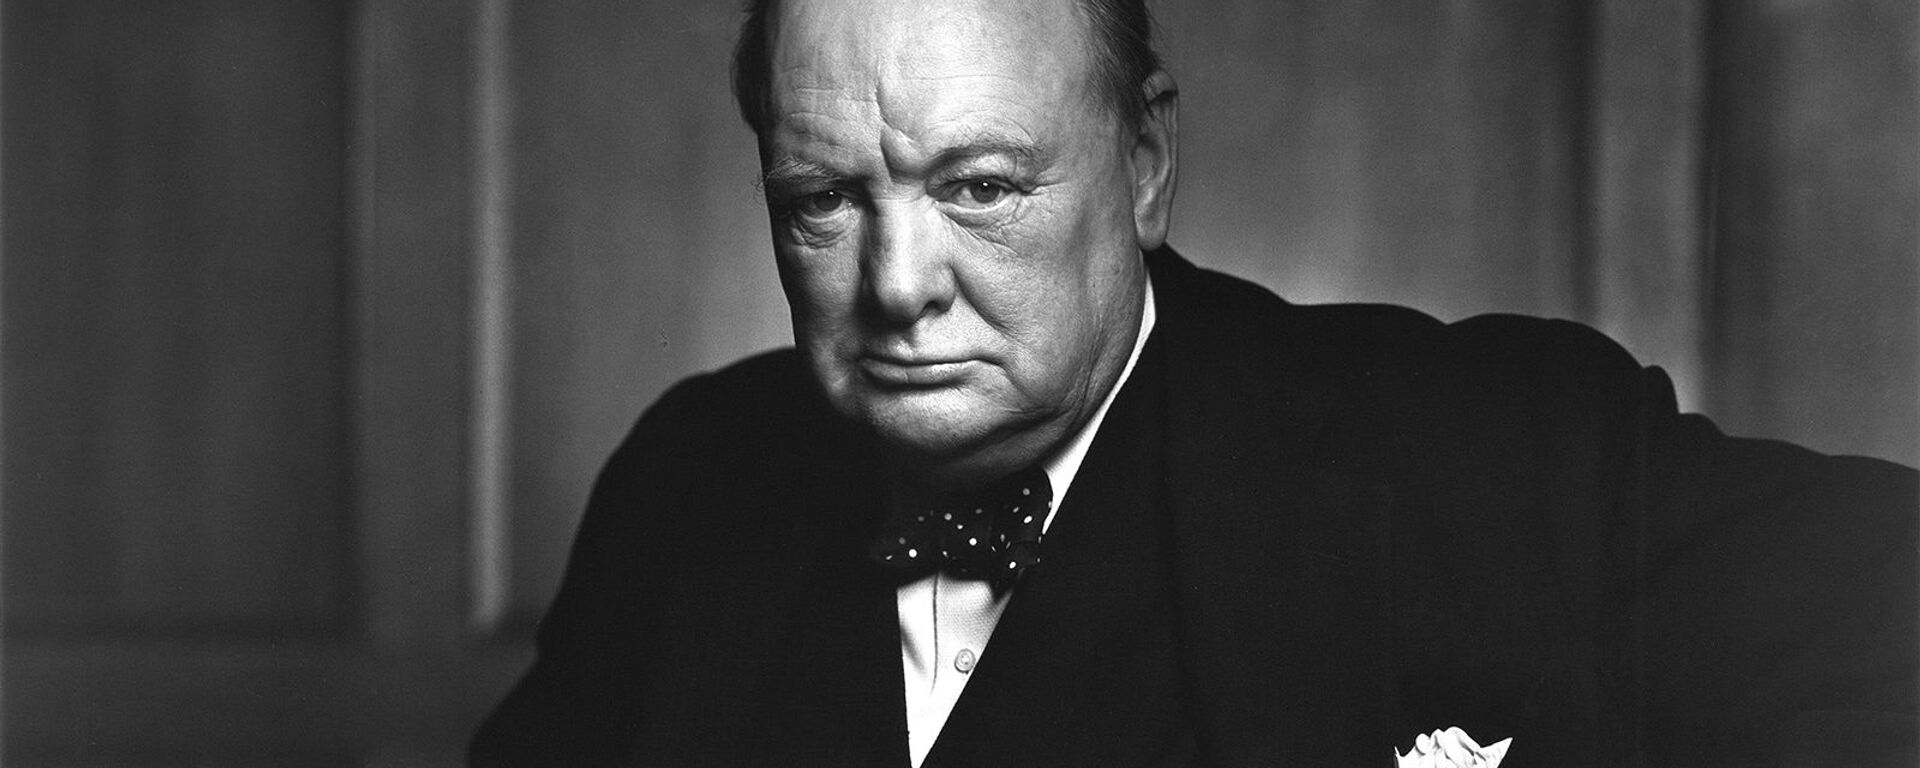 Портрет бывшего премьер-министра Великобритании Уинстона Черчилля фотографa Юсуфa Каршa - Sputnik Արմենիա, 1920, 23.06.2020